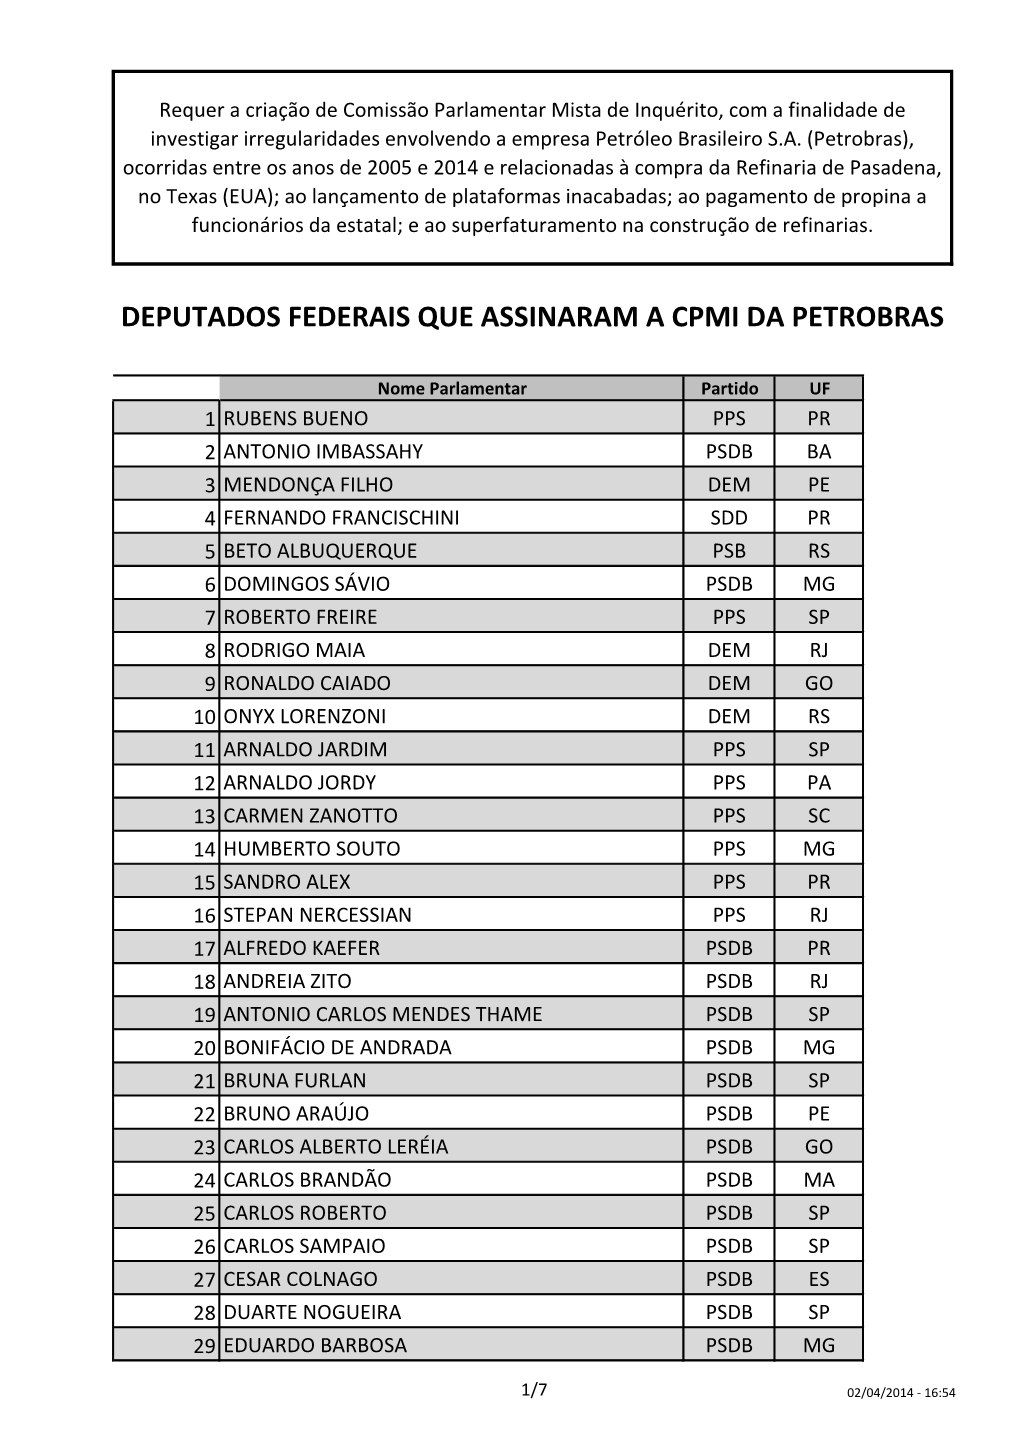 Deputados Federais Que Assinaram a Cpmi Da Petrobras